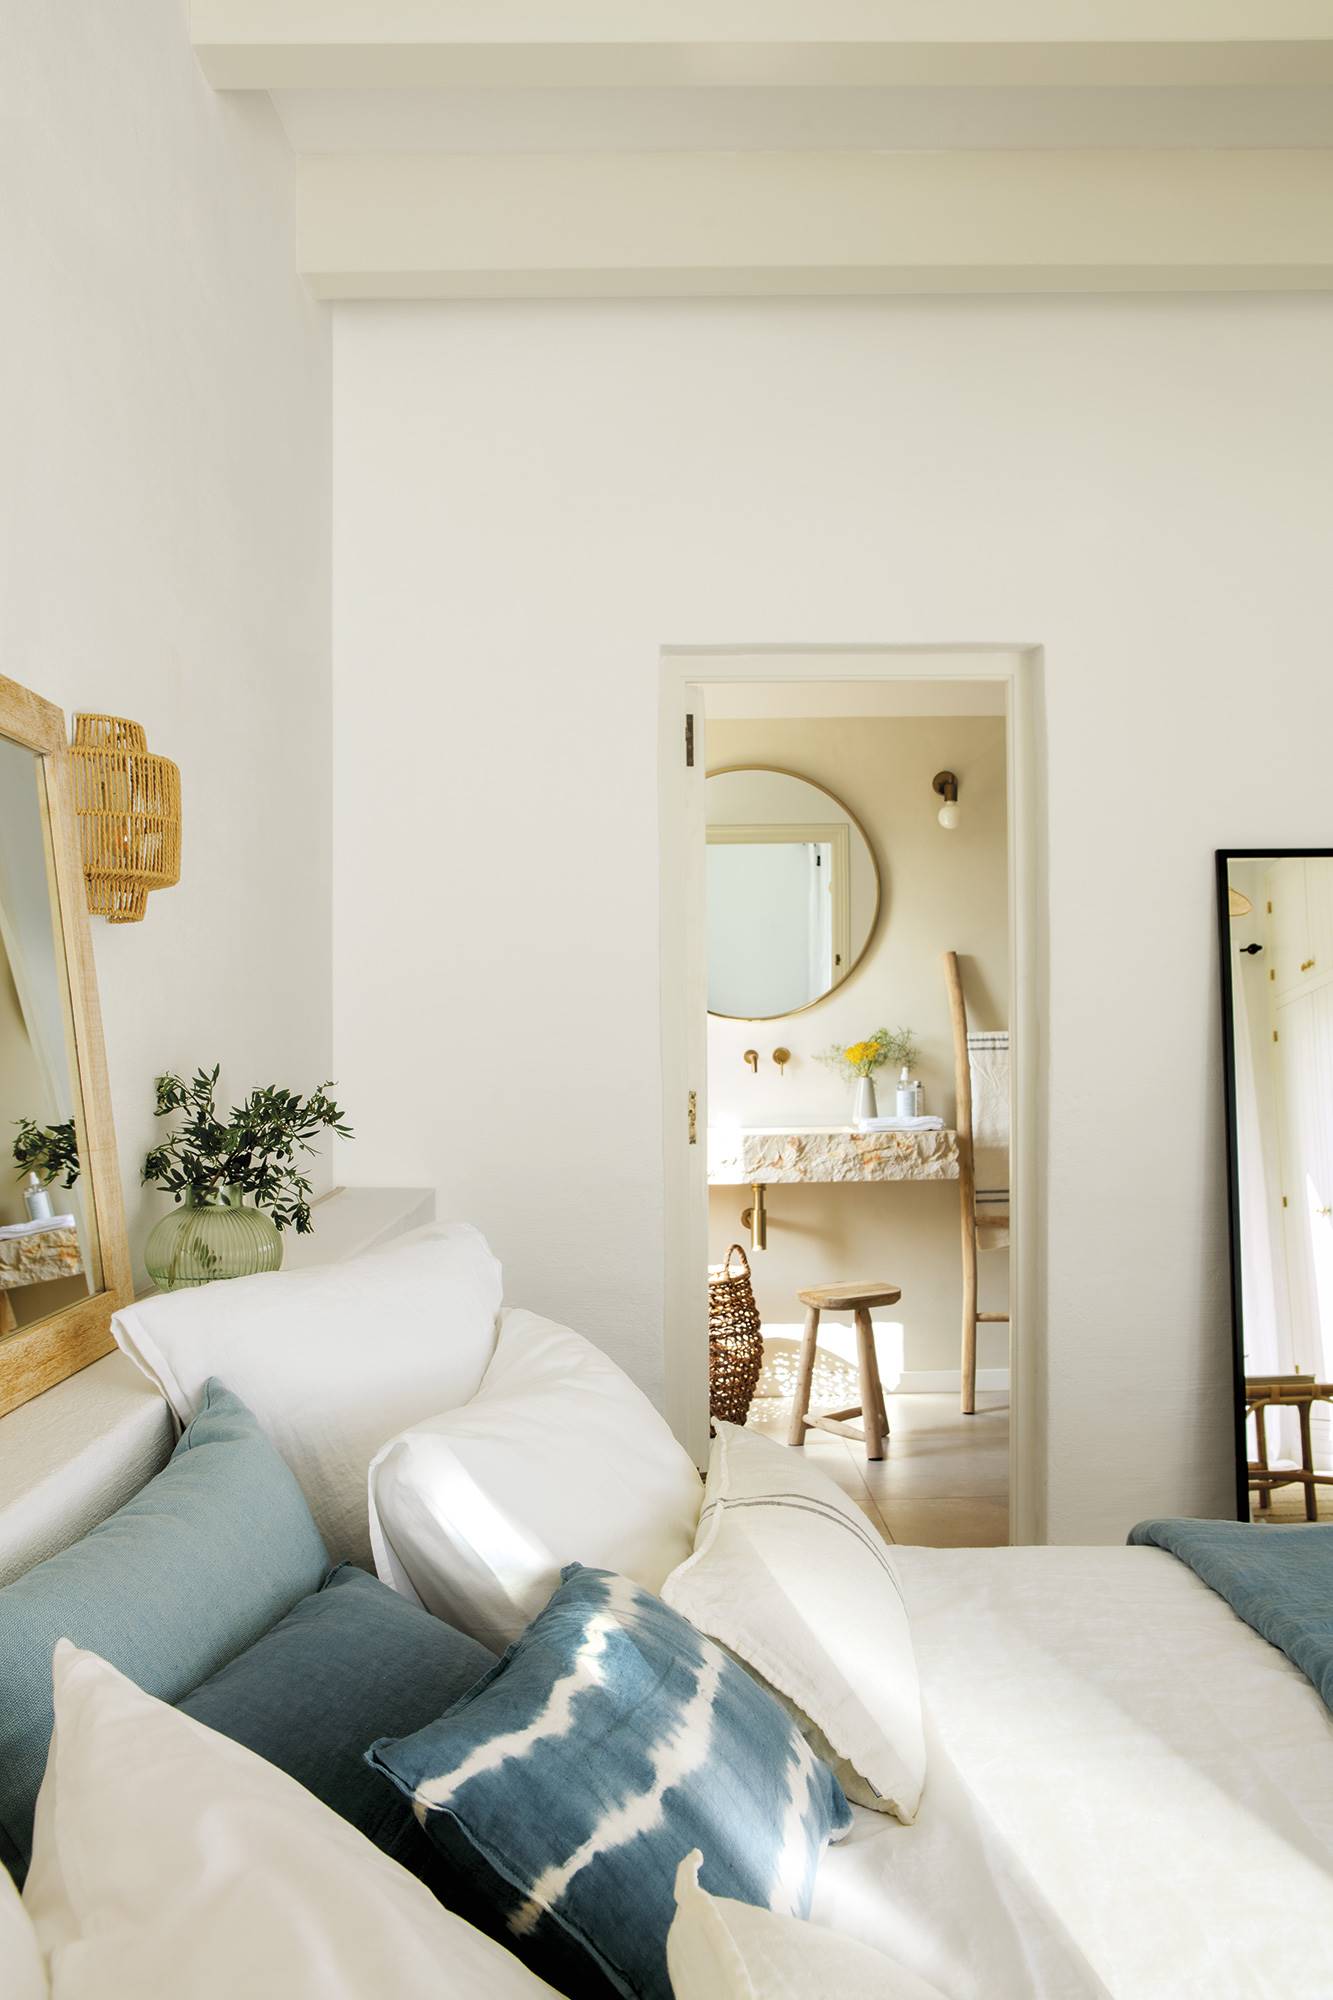 Dormitorio de estilo mediterráneo con cojines azules y ropa de cama blanca